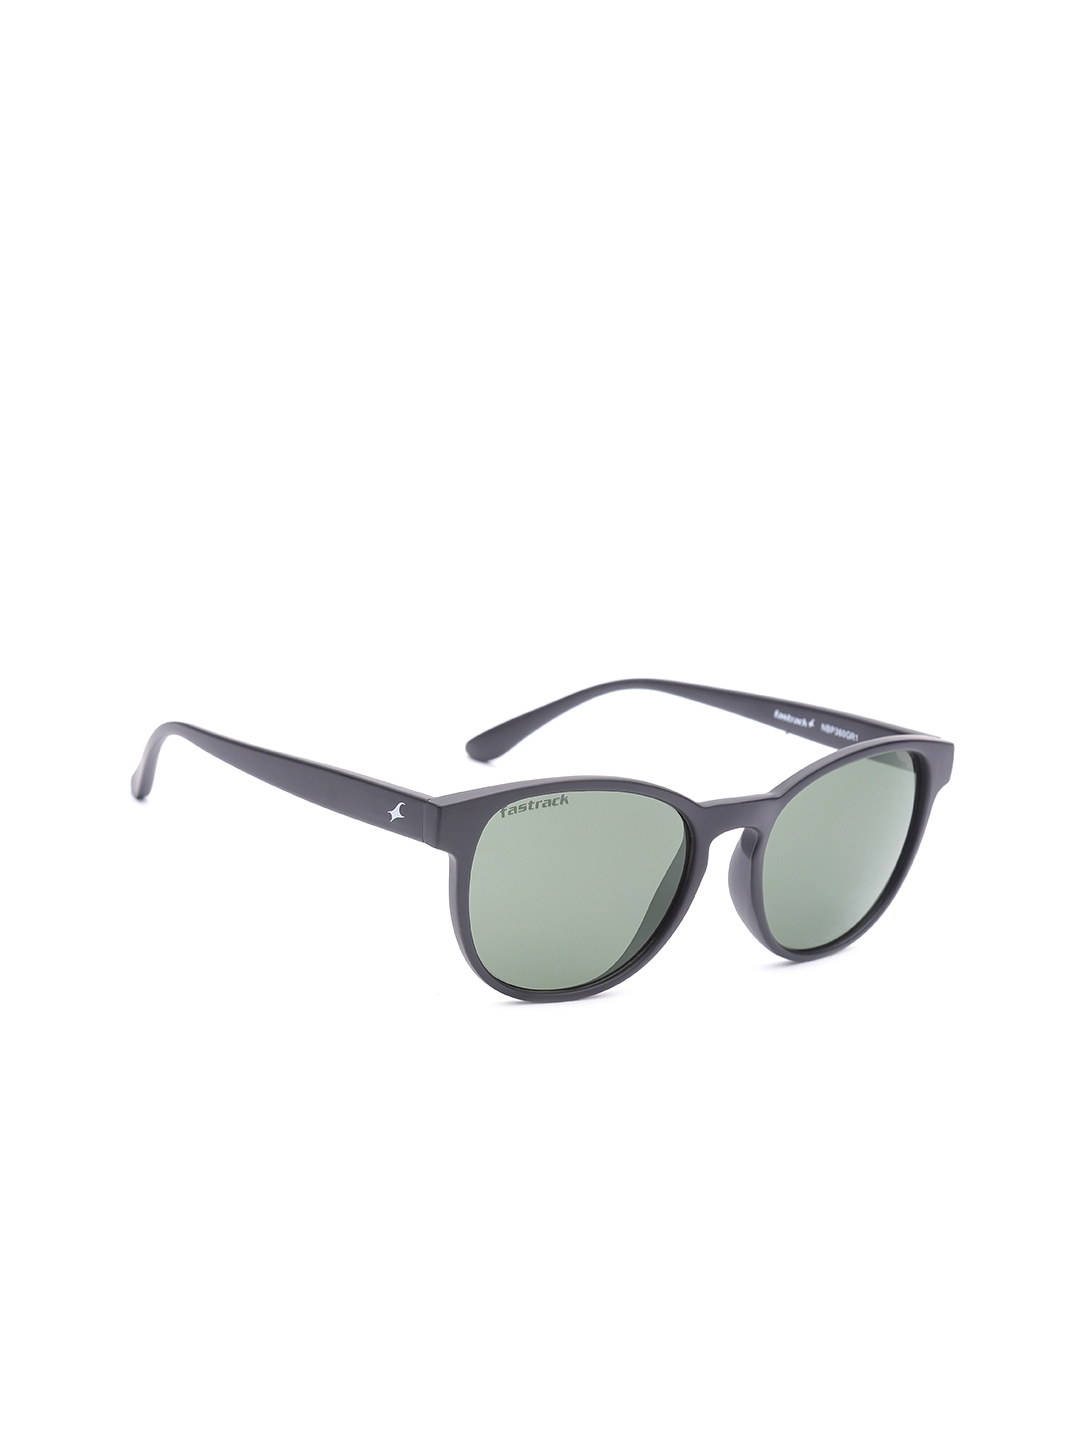 Buy Fastrack Men Oval Sunglasses NBP360GR1 - Sunglasses for Men 9028749